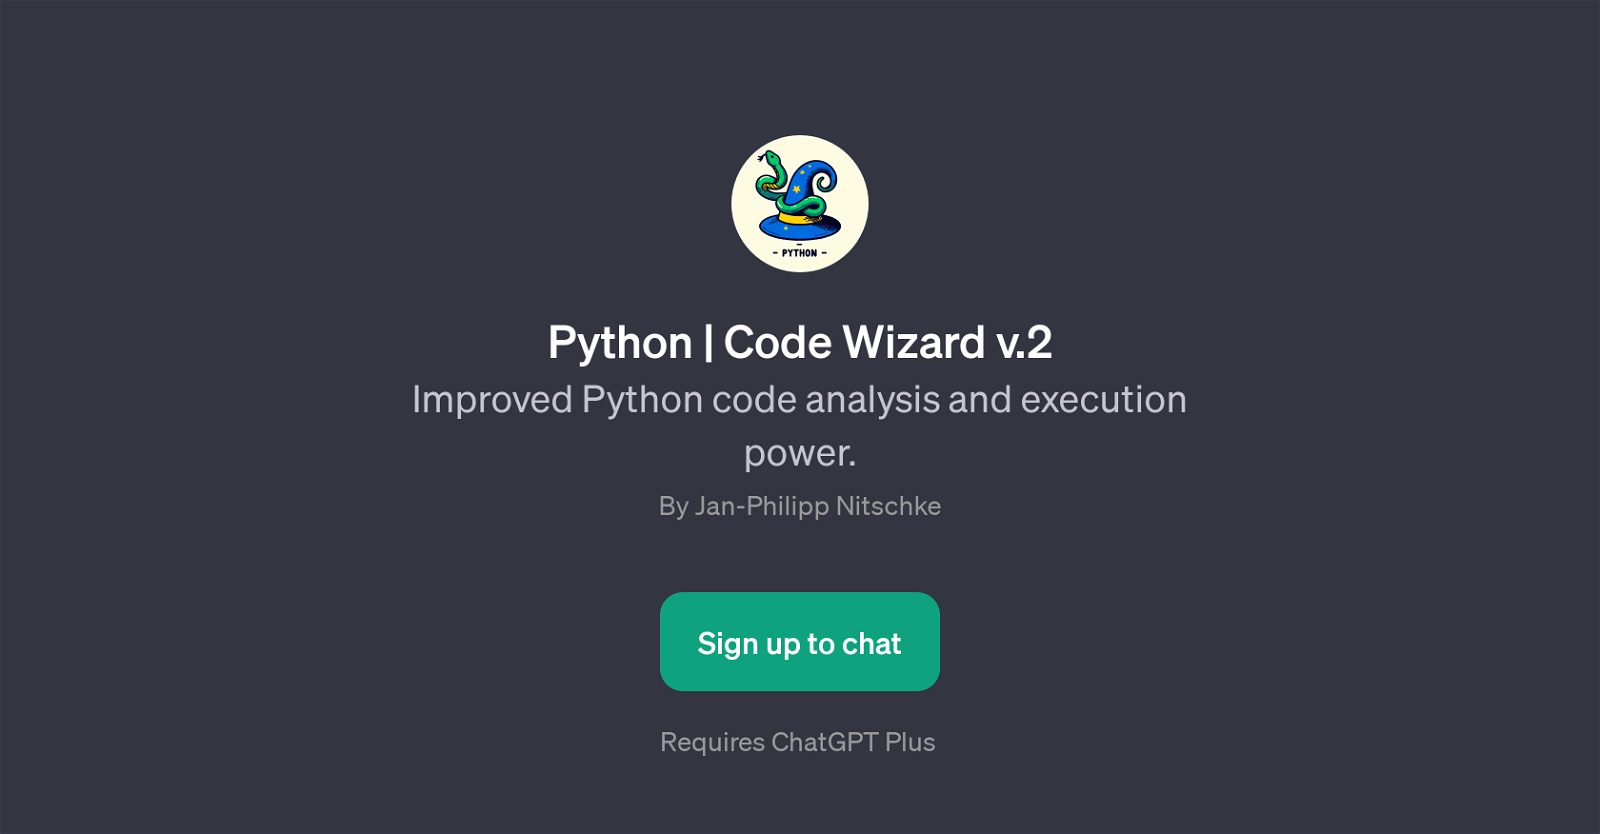 Python | Code Wizard v.2 website